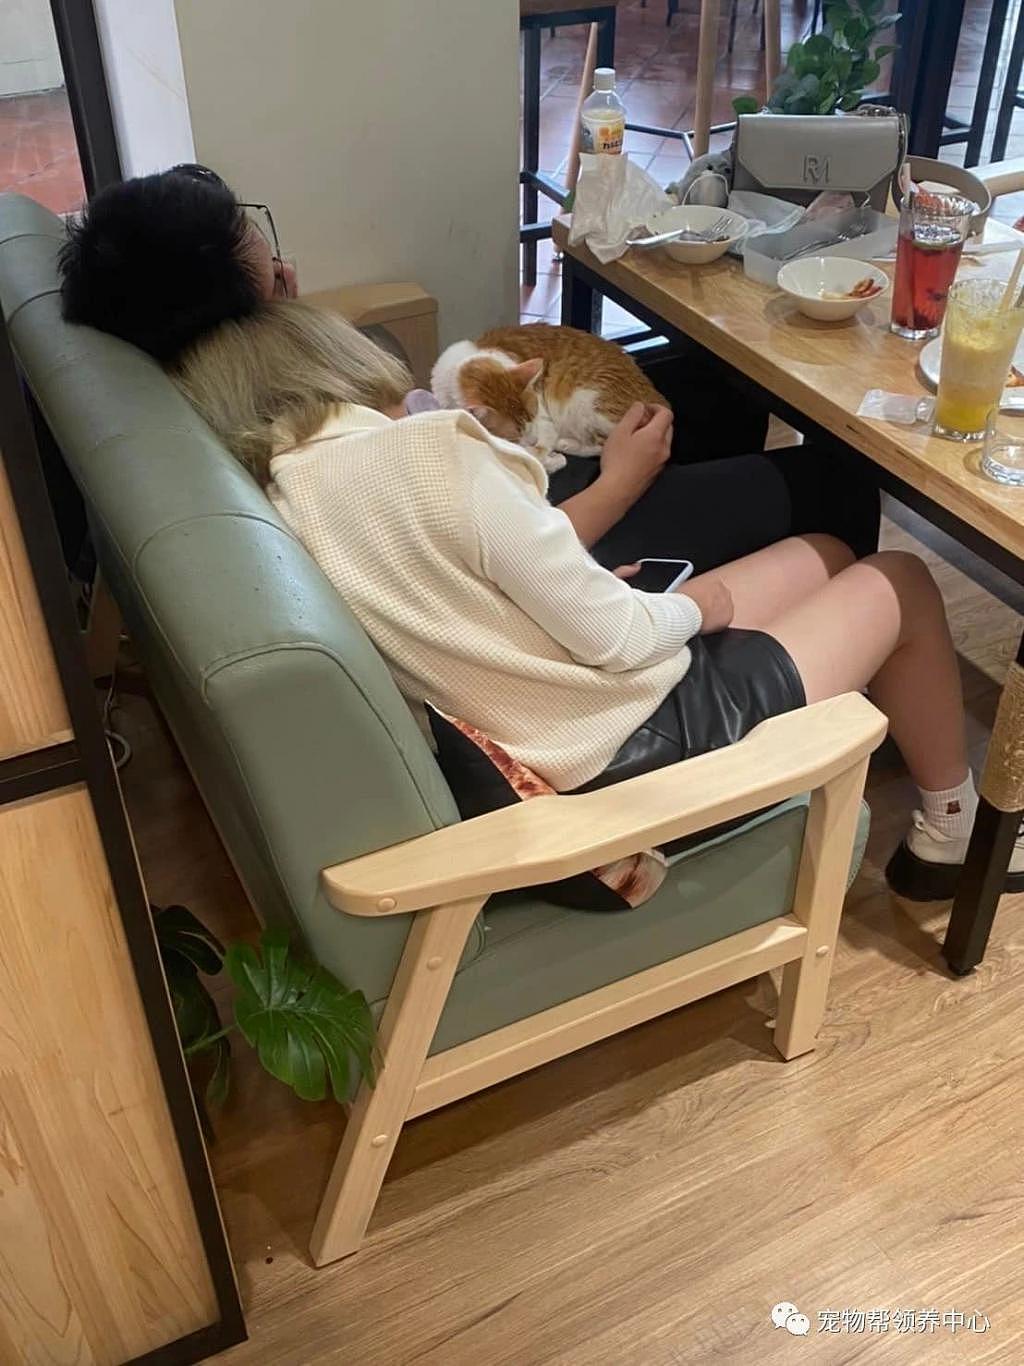 店猫趴在客人腿上安睡，客人竟跟着一起睡翻，温馨又好笑 ~ - 1